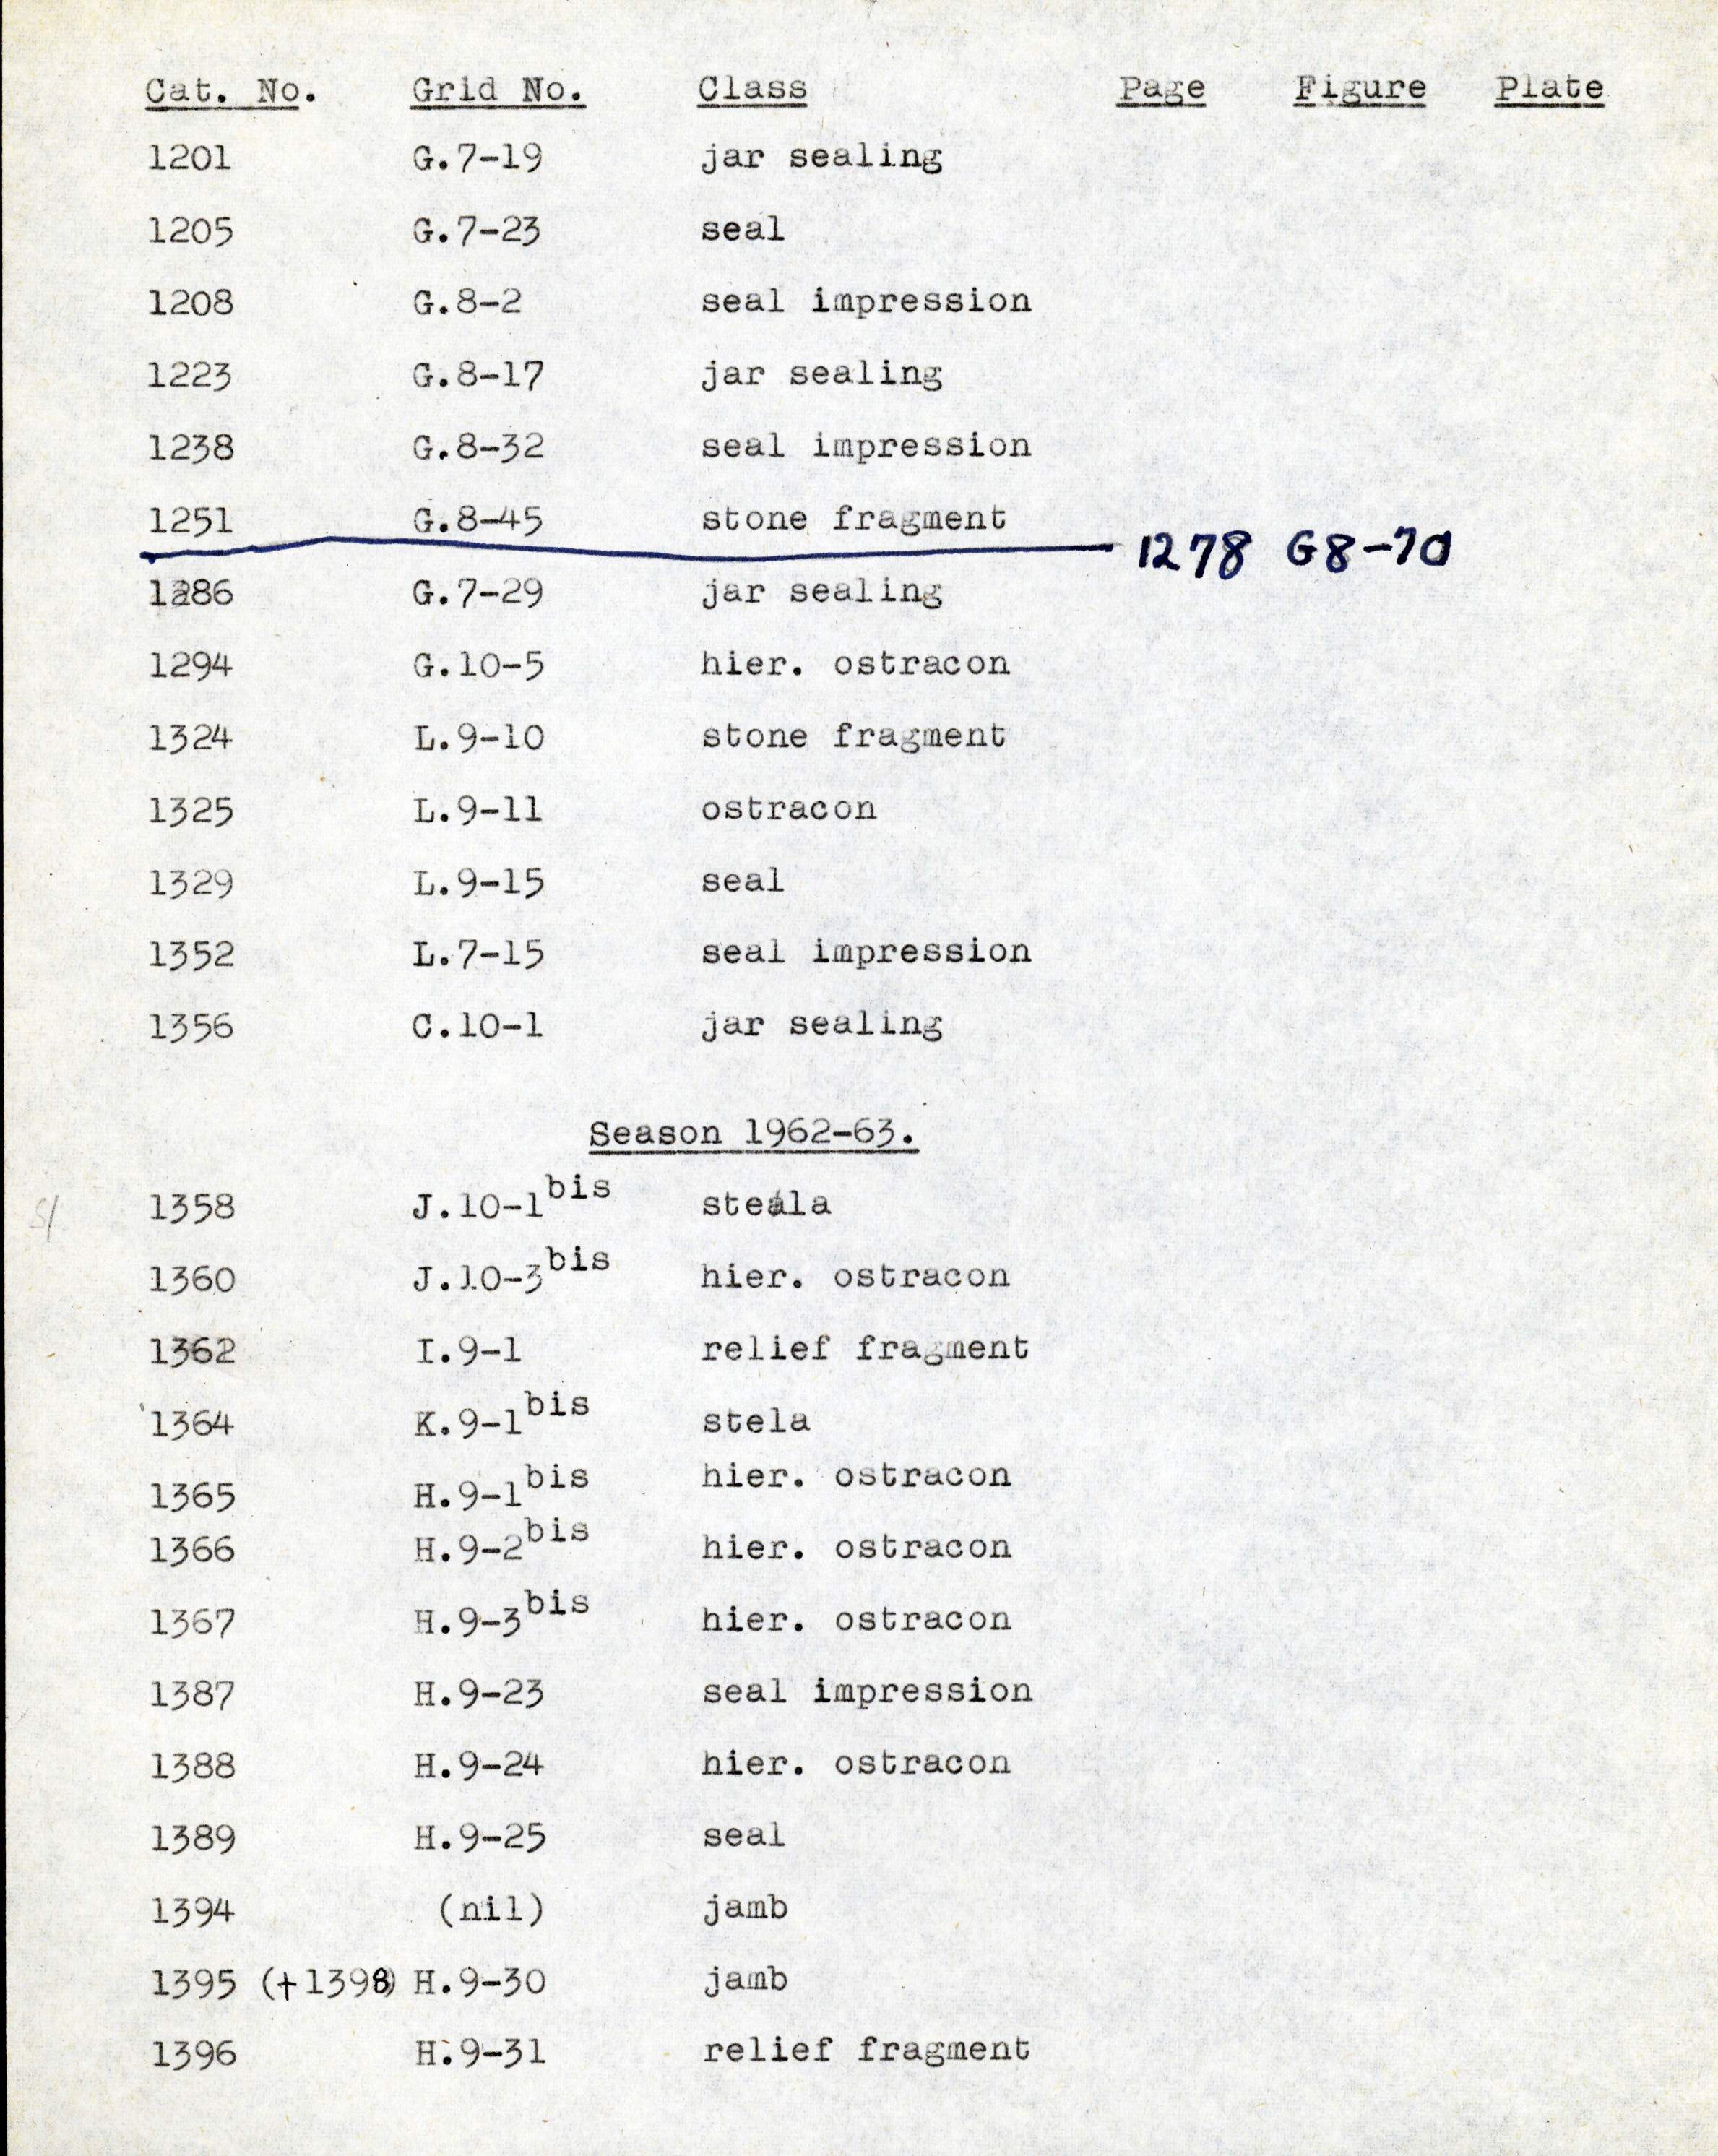 1959-74  Buhen DIST.68.44n